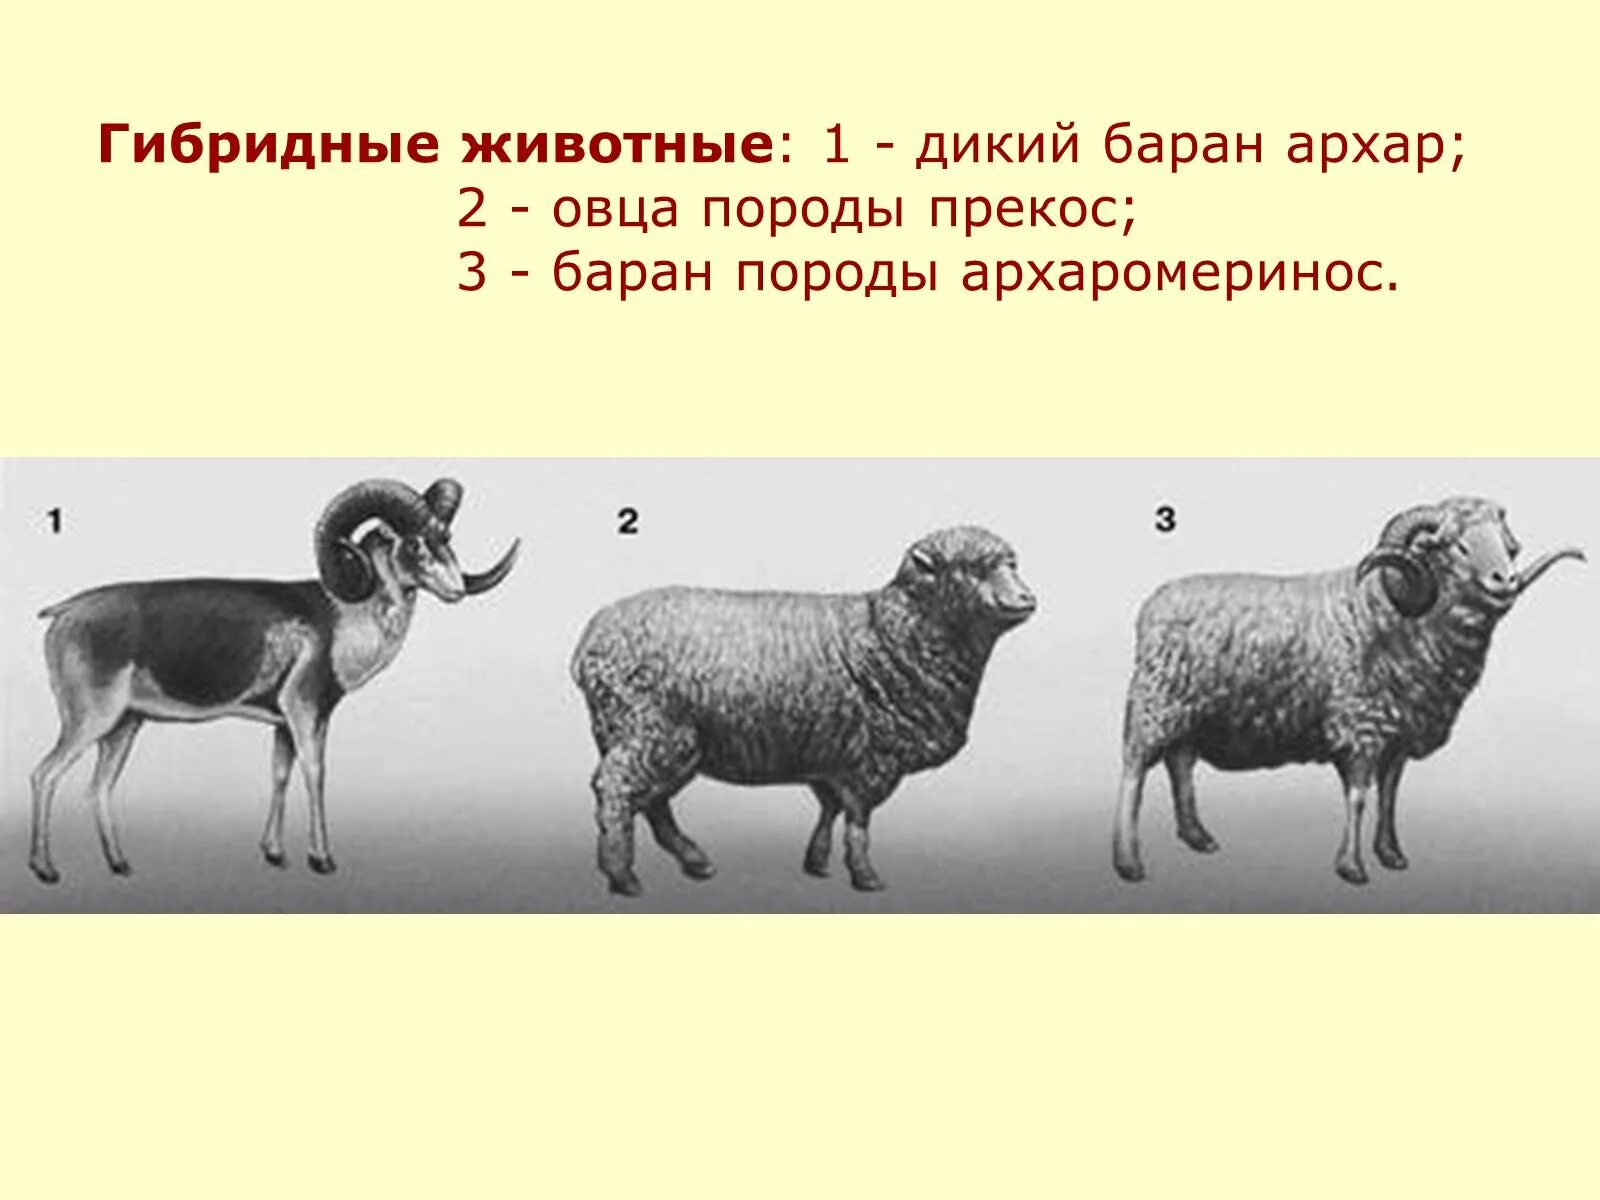 Селекция порода животных. Казахский архаромеринос порода овец. Архаромеринос порода. Дикий баран Архар селекция. Селекция животных.